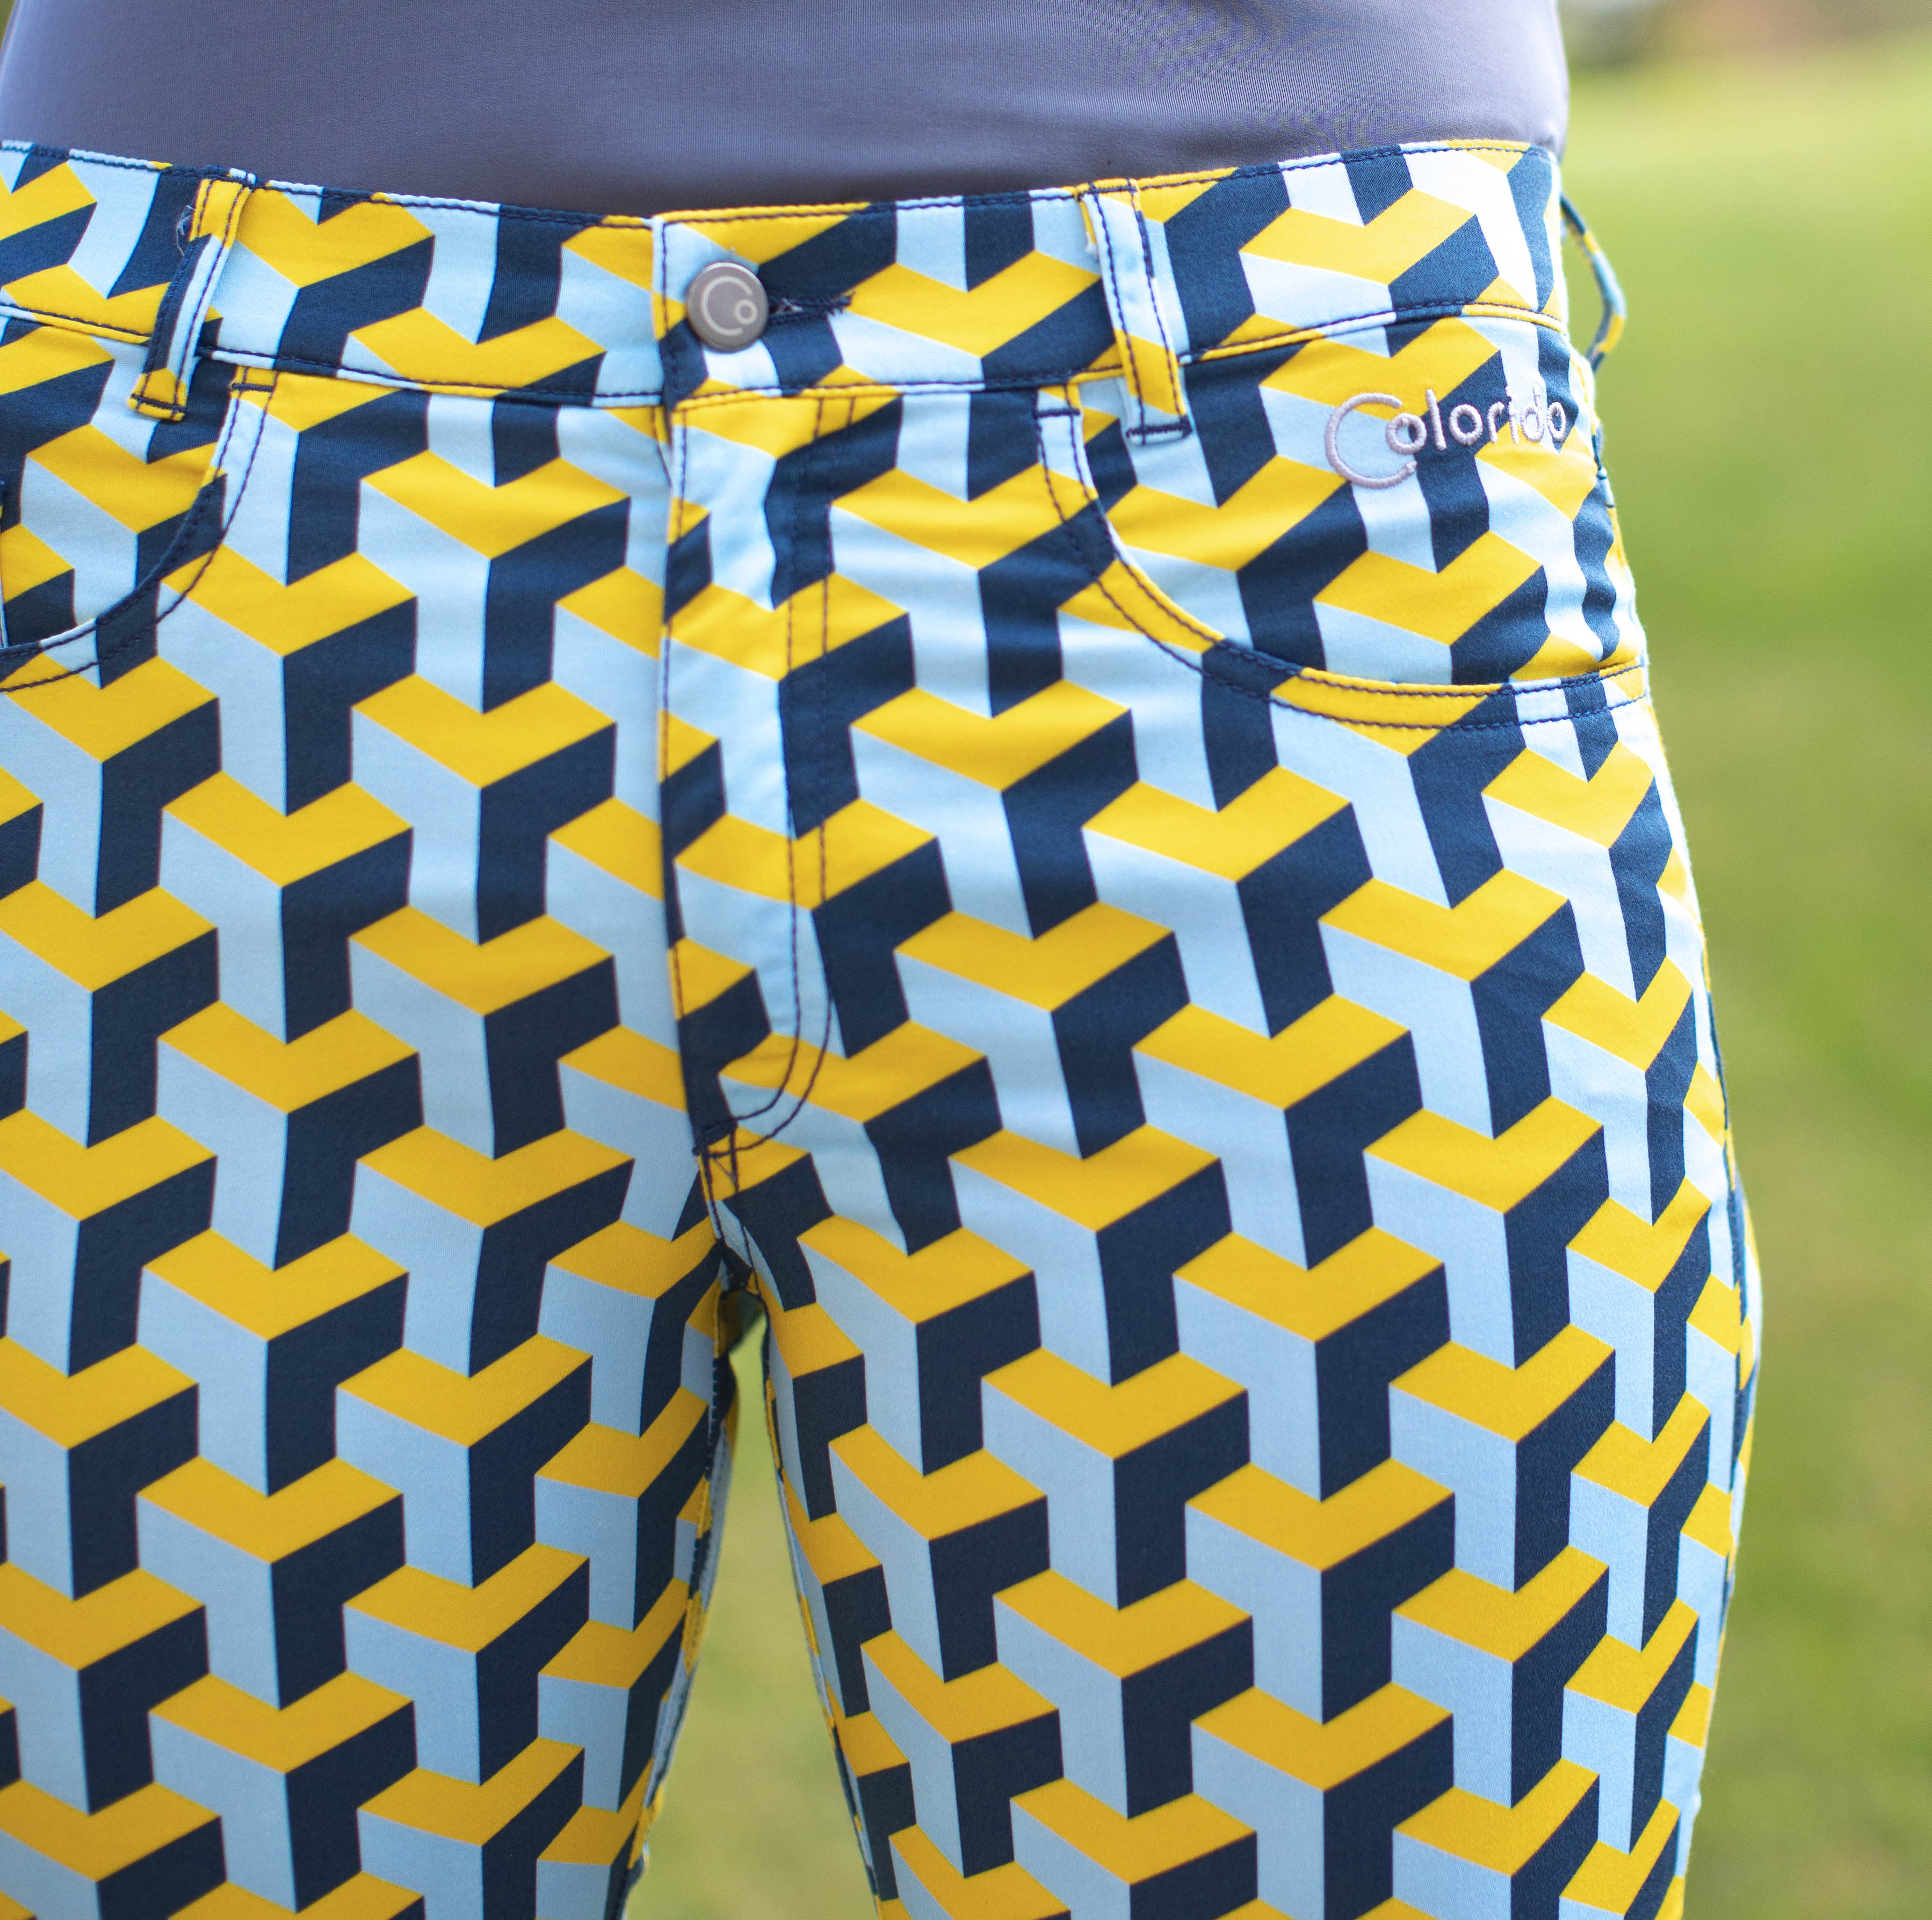 Dámské žluto-modré golfové kalhoty Colorido Velikost: M, Délka nohavic: KLASICKÁ, Barva: ŽLUTÁ